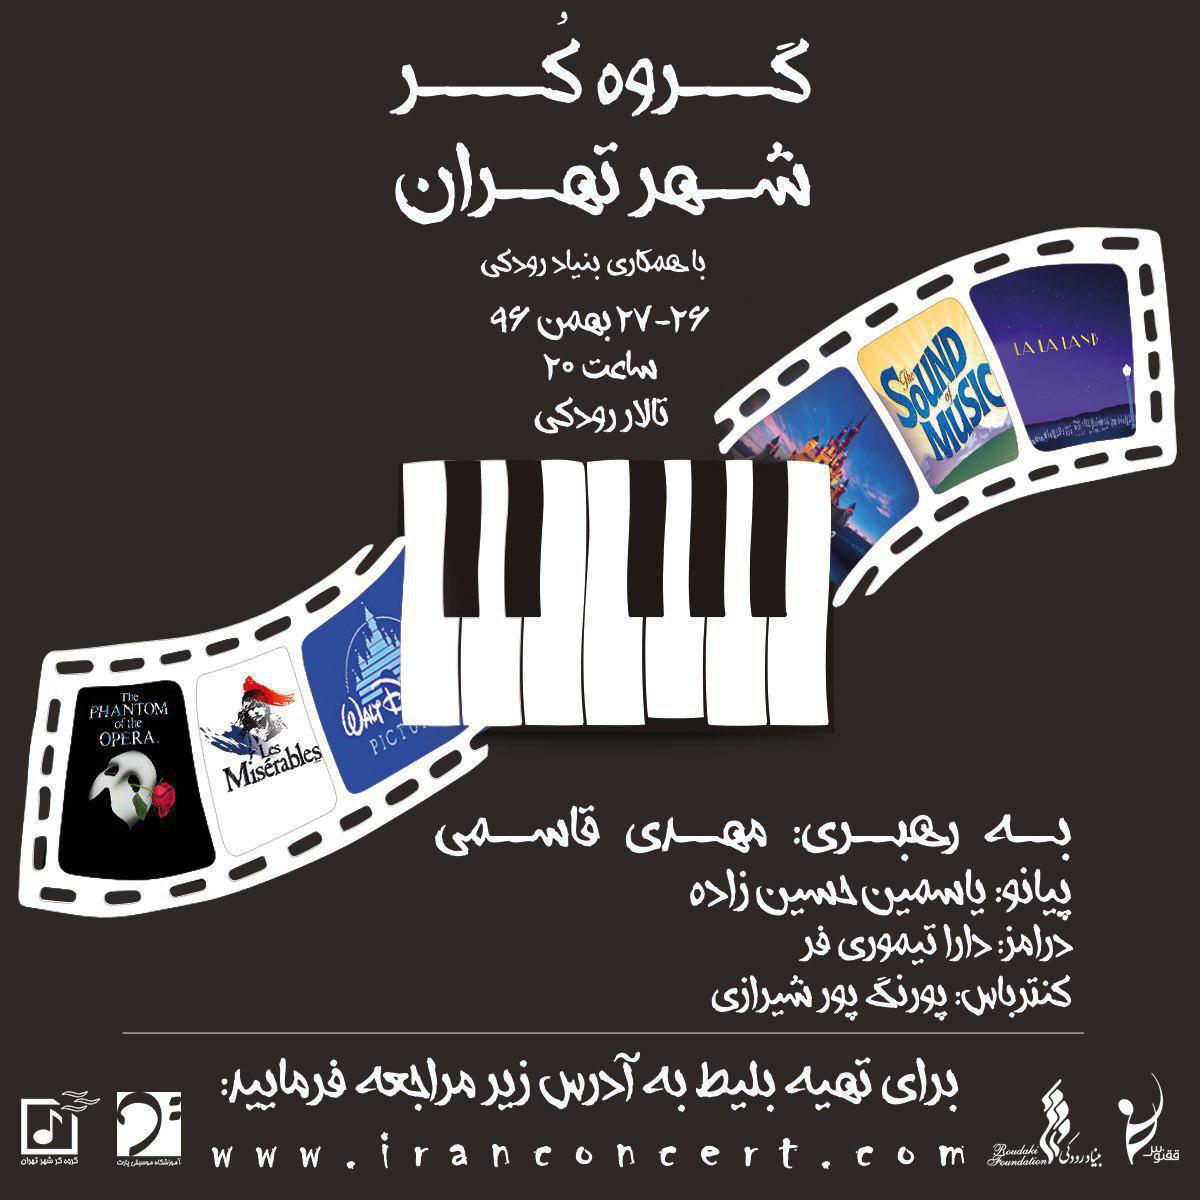 گروه کر شهر تهران قطعات فیلم‌های موزیکال را اجرا می‌کند